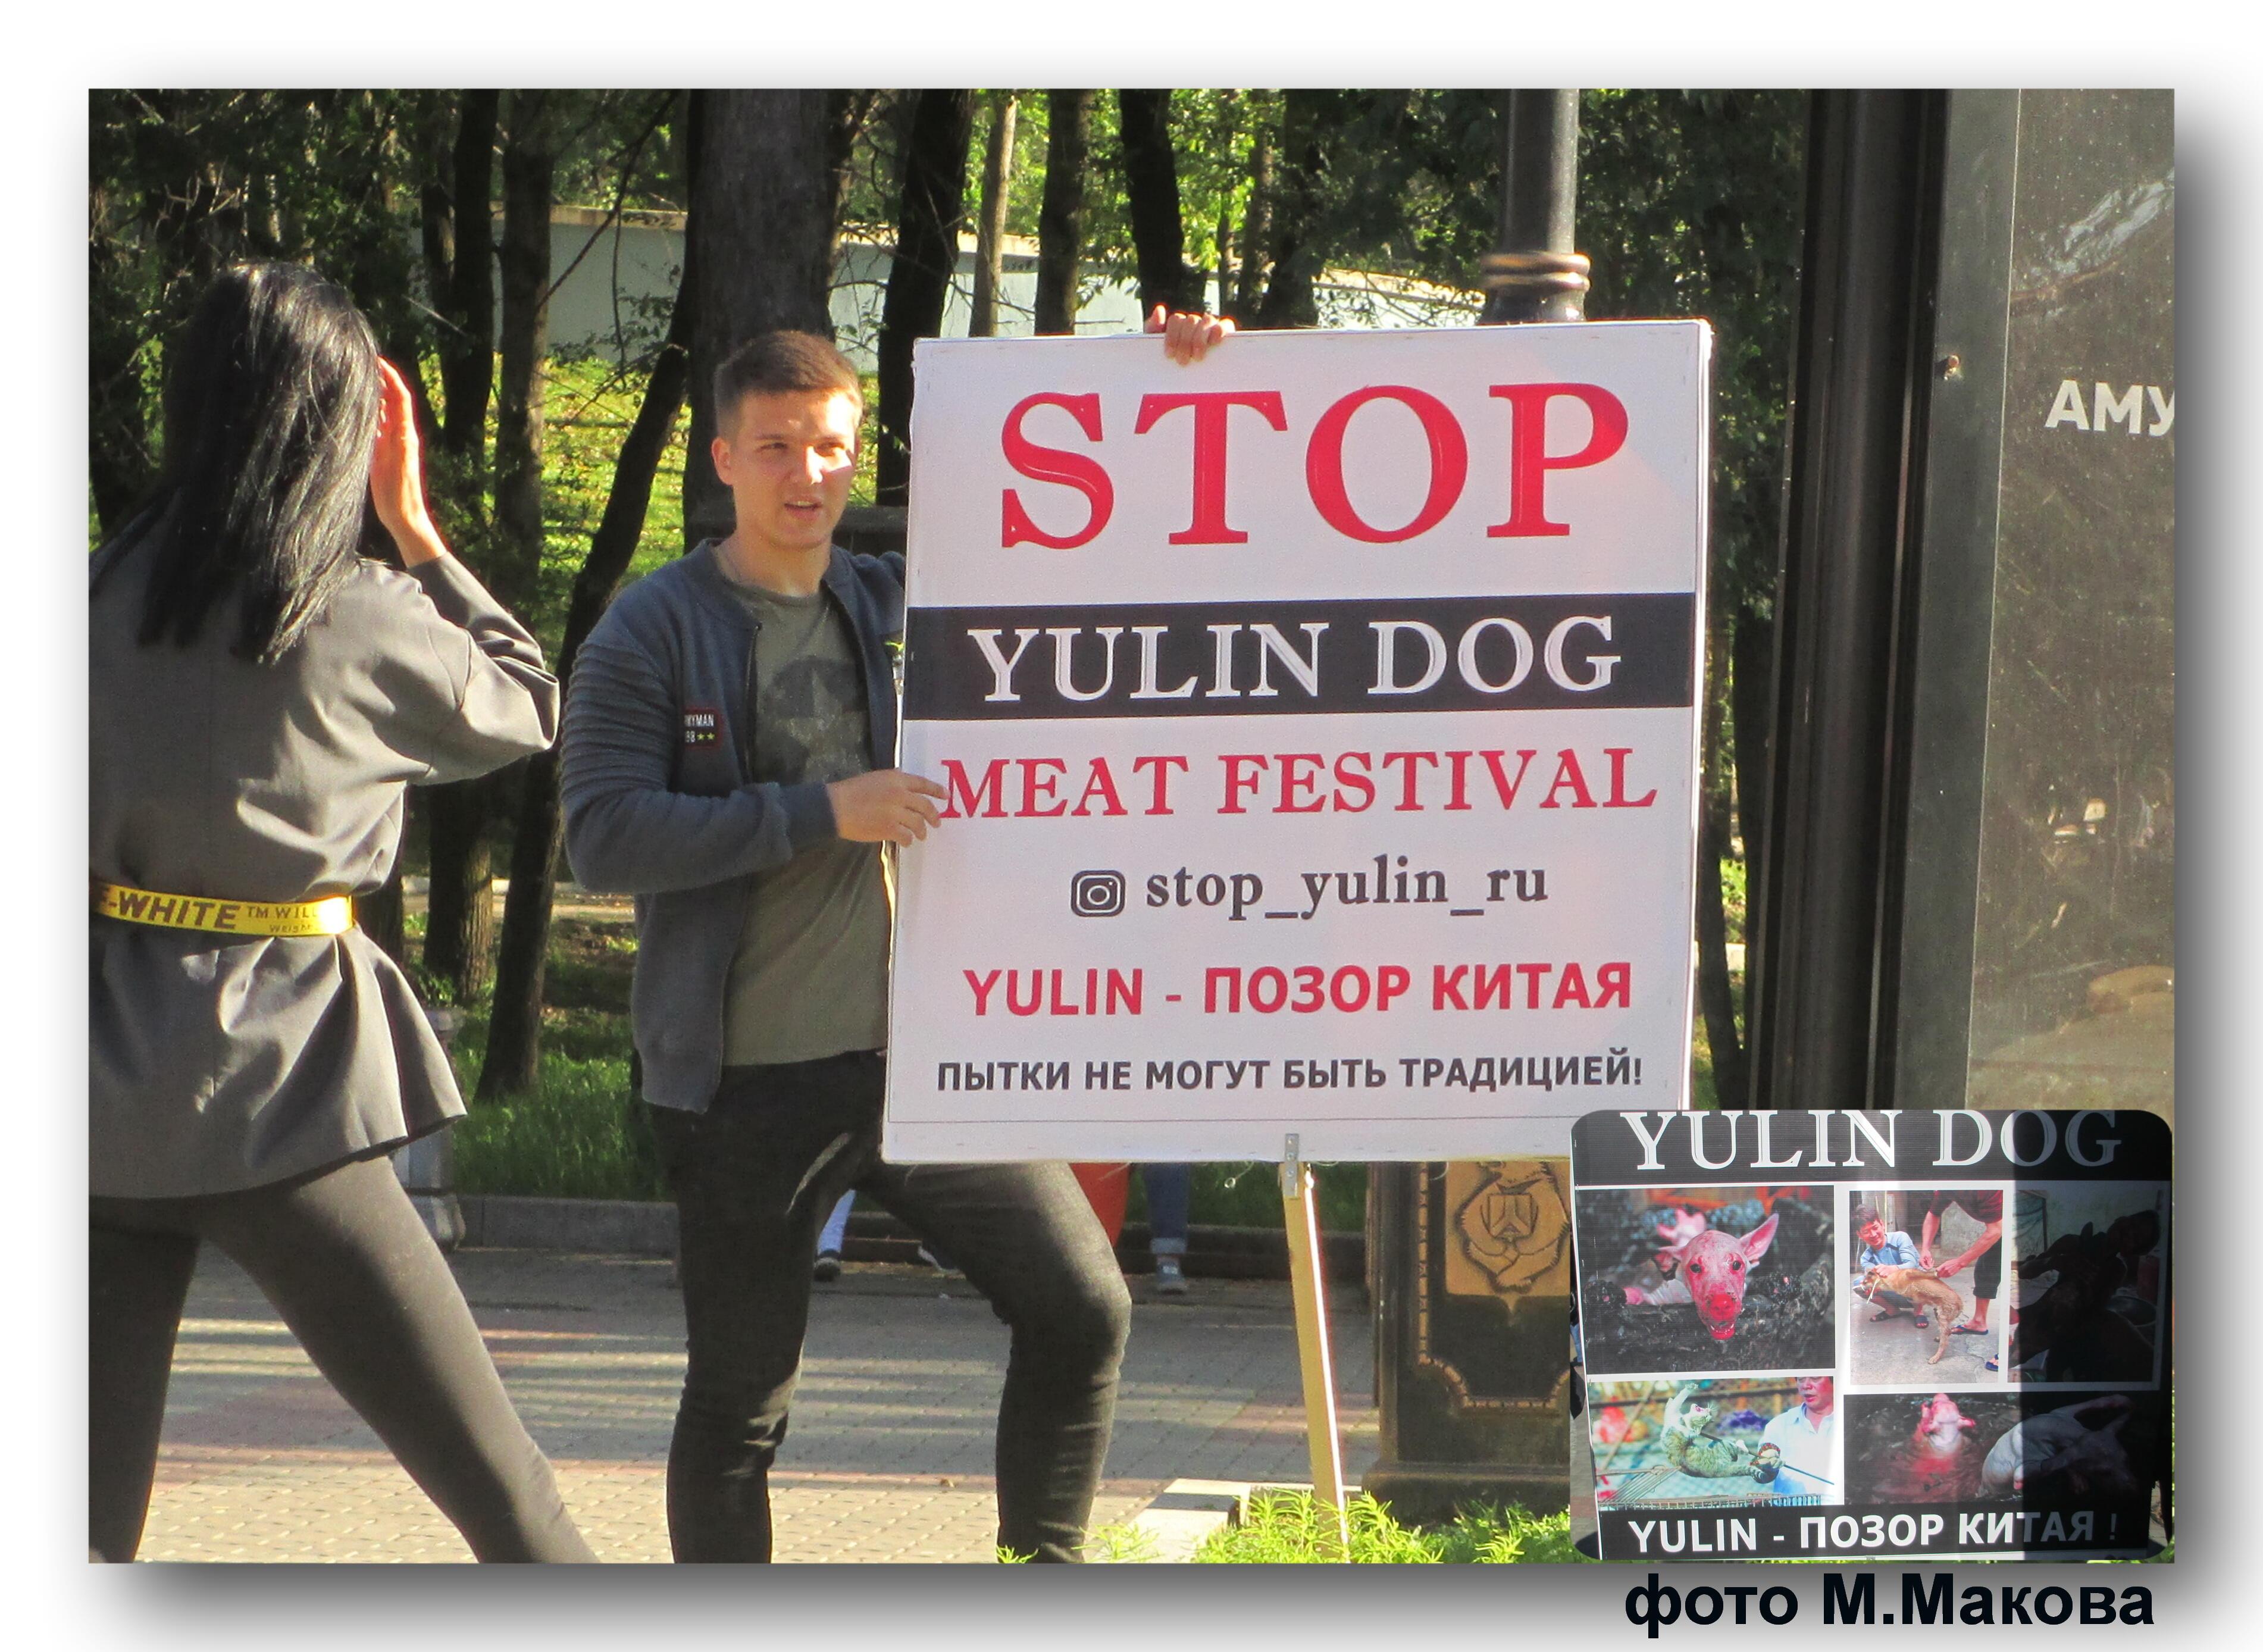 Yulin dog